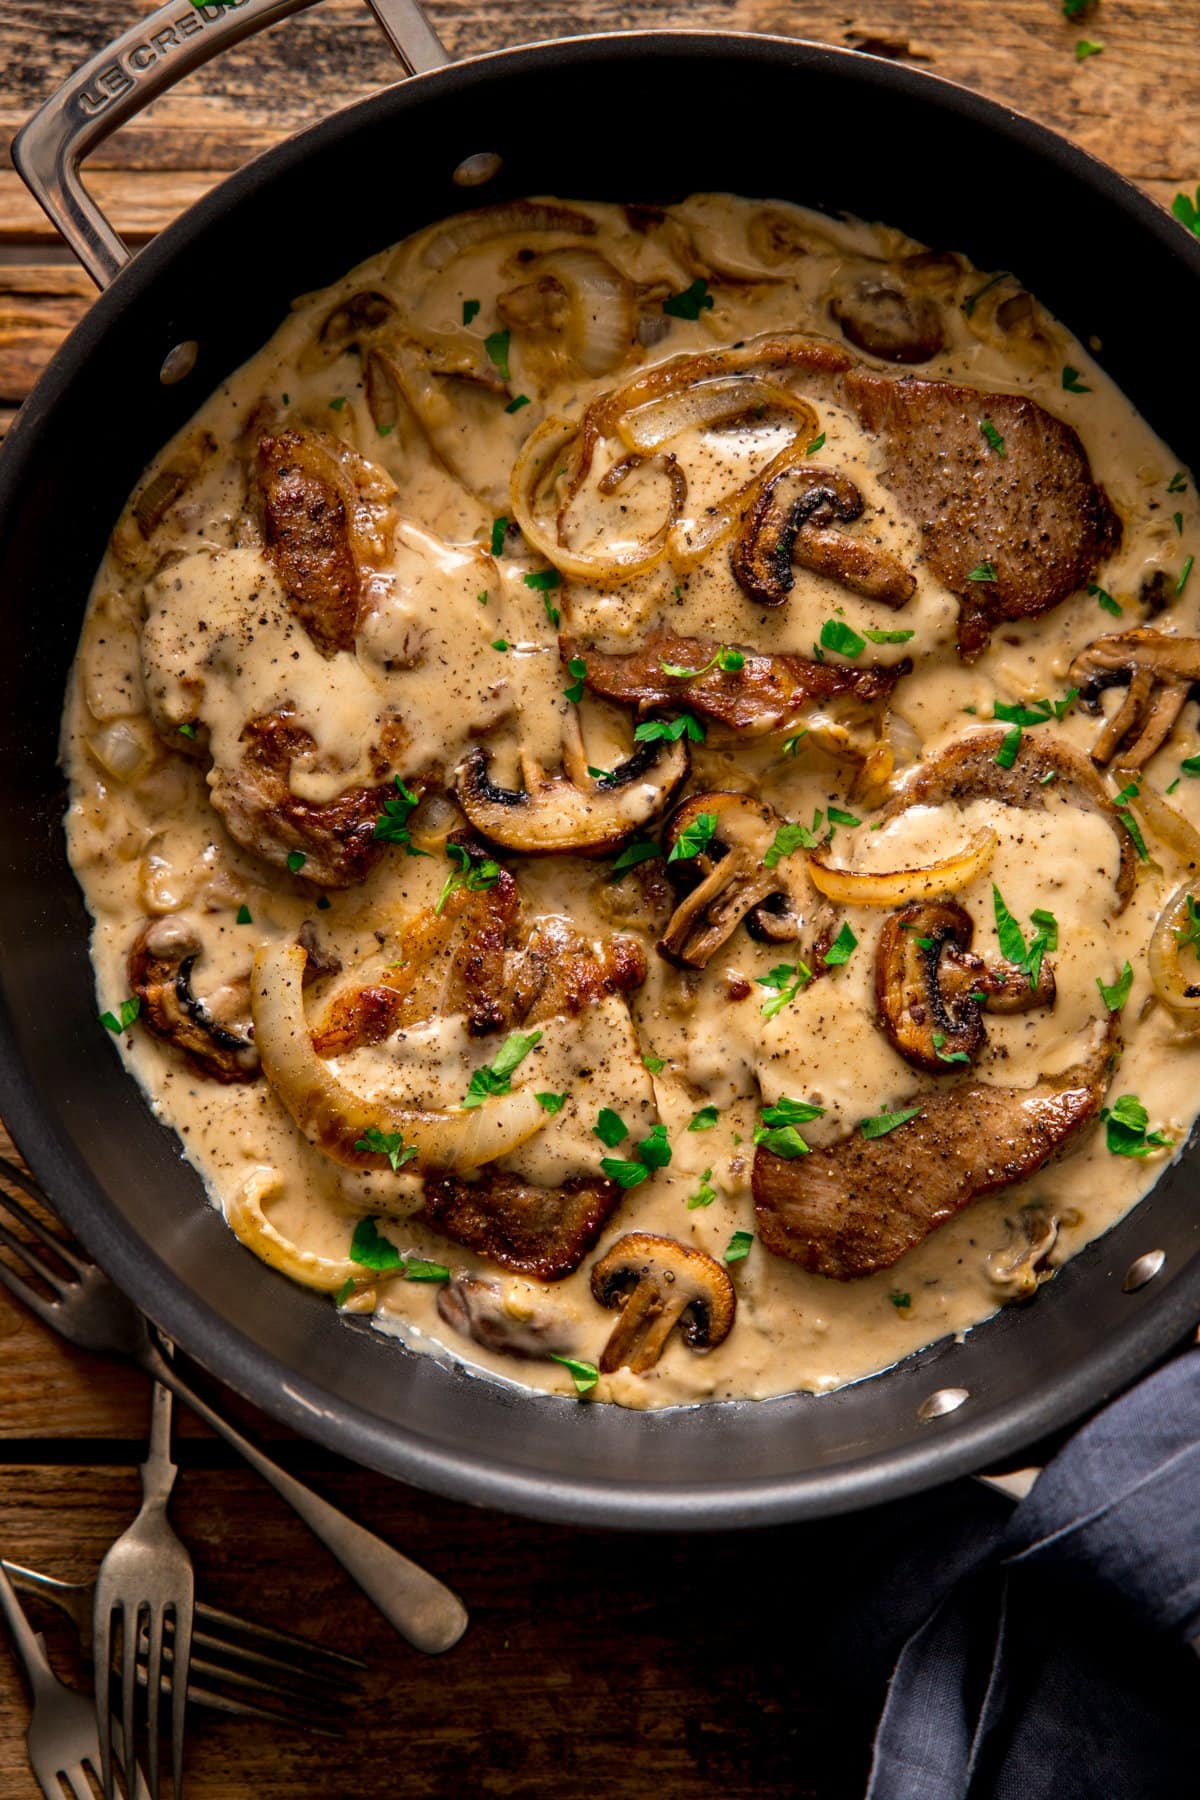 Pork steaks in cream and mushroom sauce in a dark frying pan.